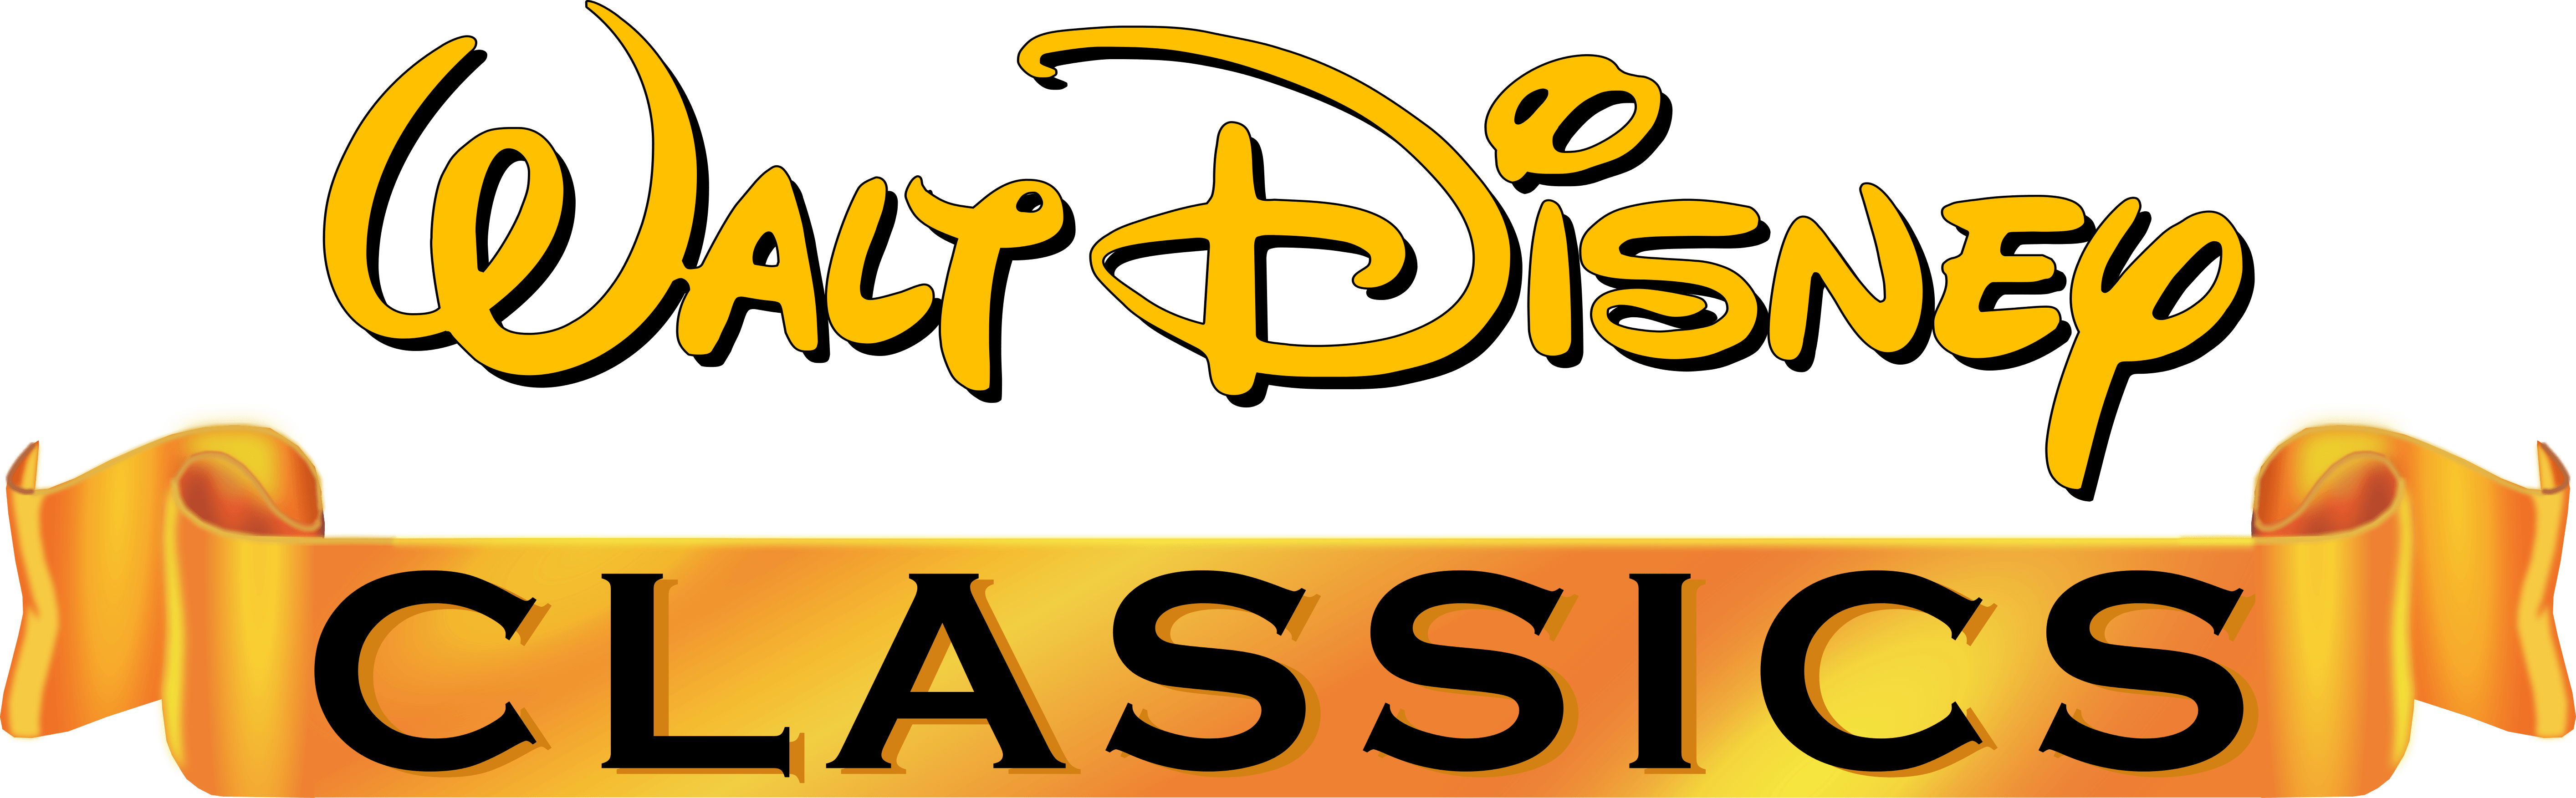 Walt Disney Classics Logo - Walt disney classics Logos